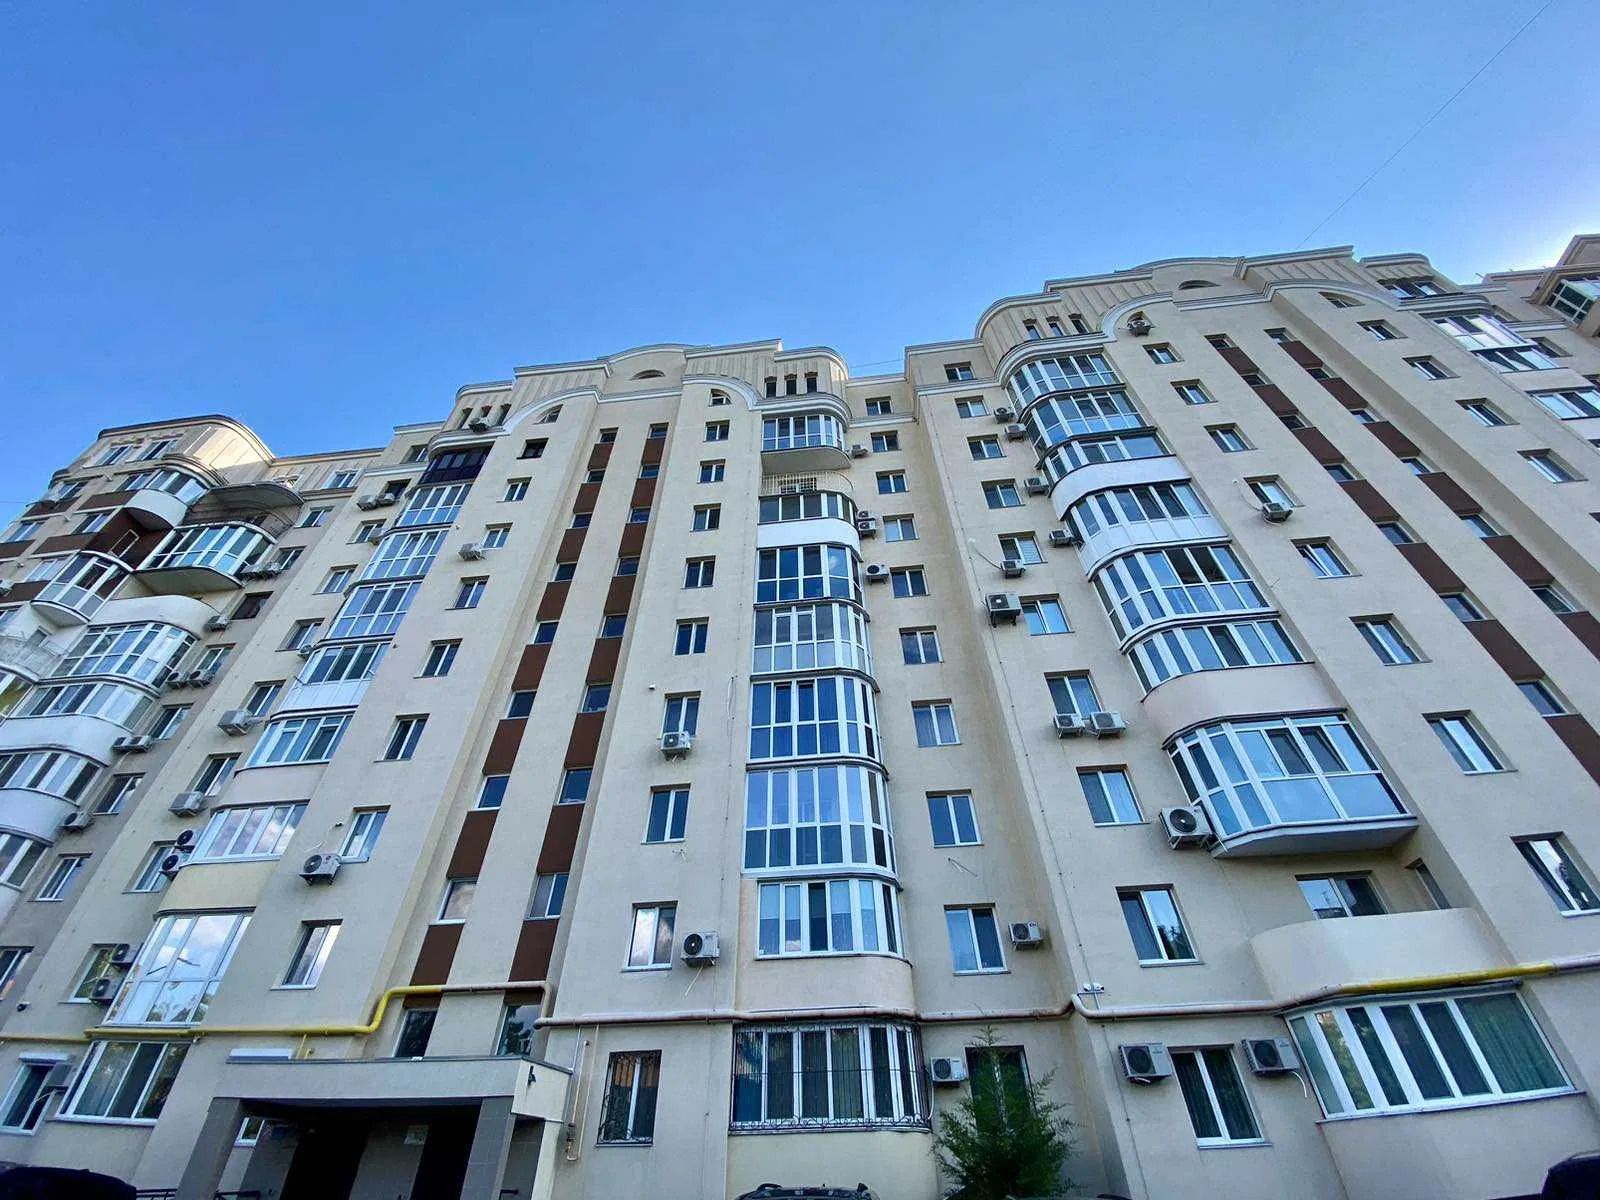 Області, де продають найдешевші квартири в Україні - Нерухомість